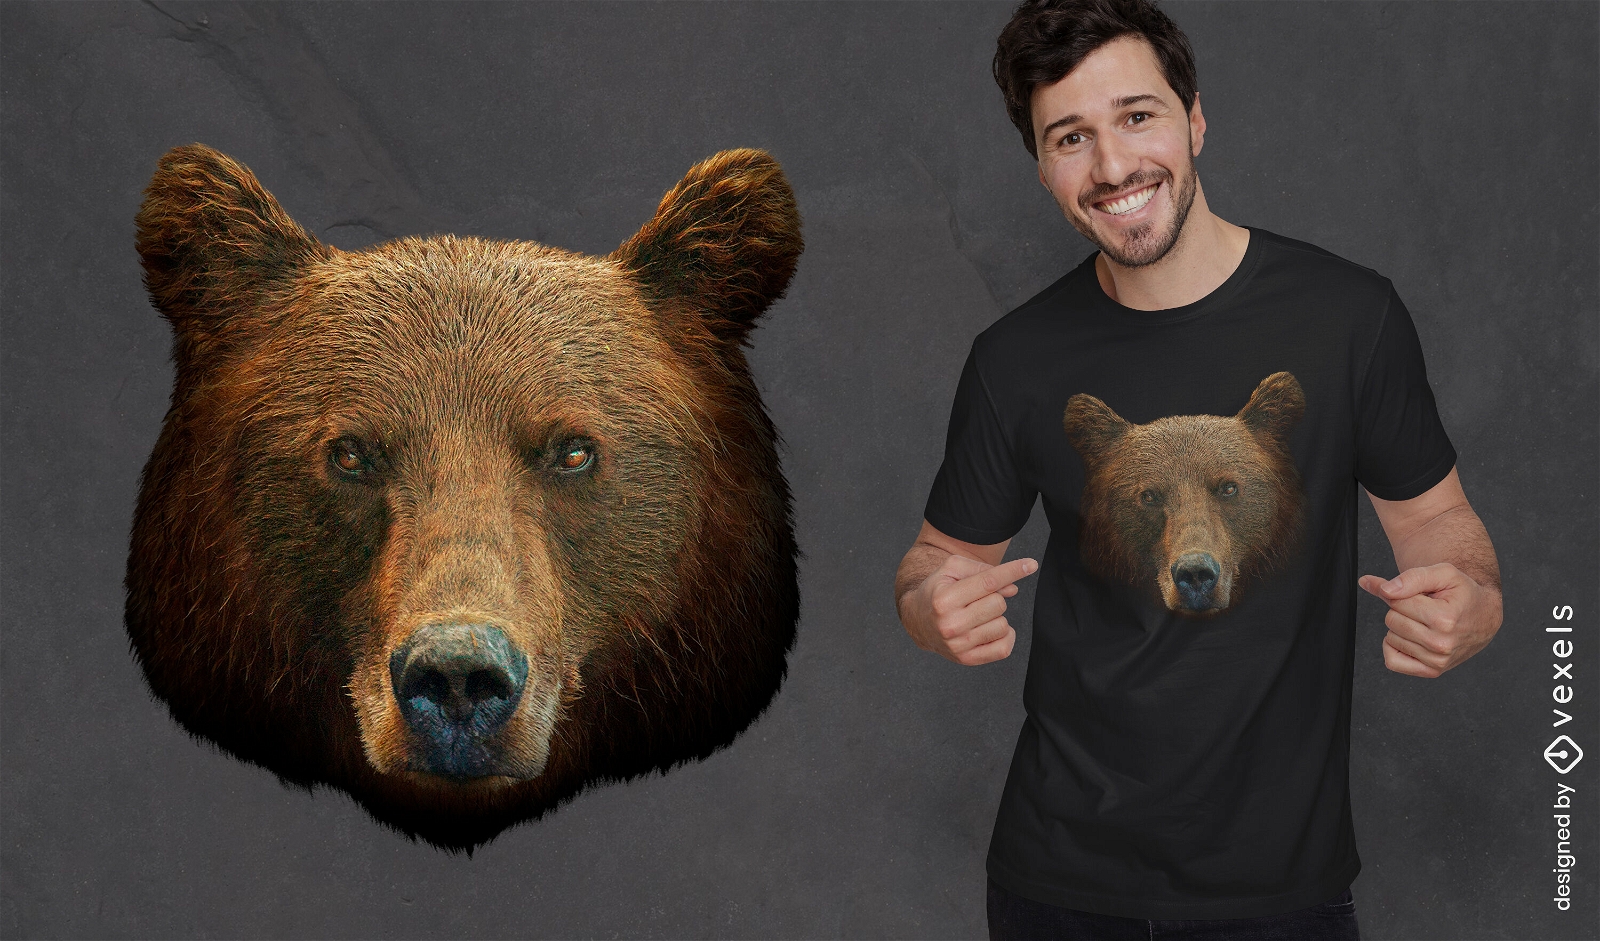 Realistisches T-Shirt-Design mit Grizzlyb?renkopf